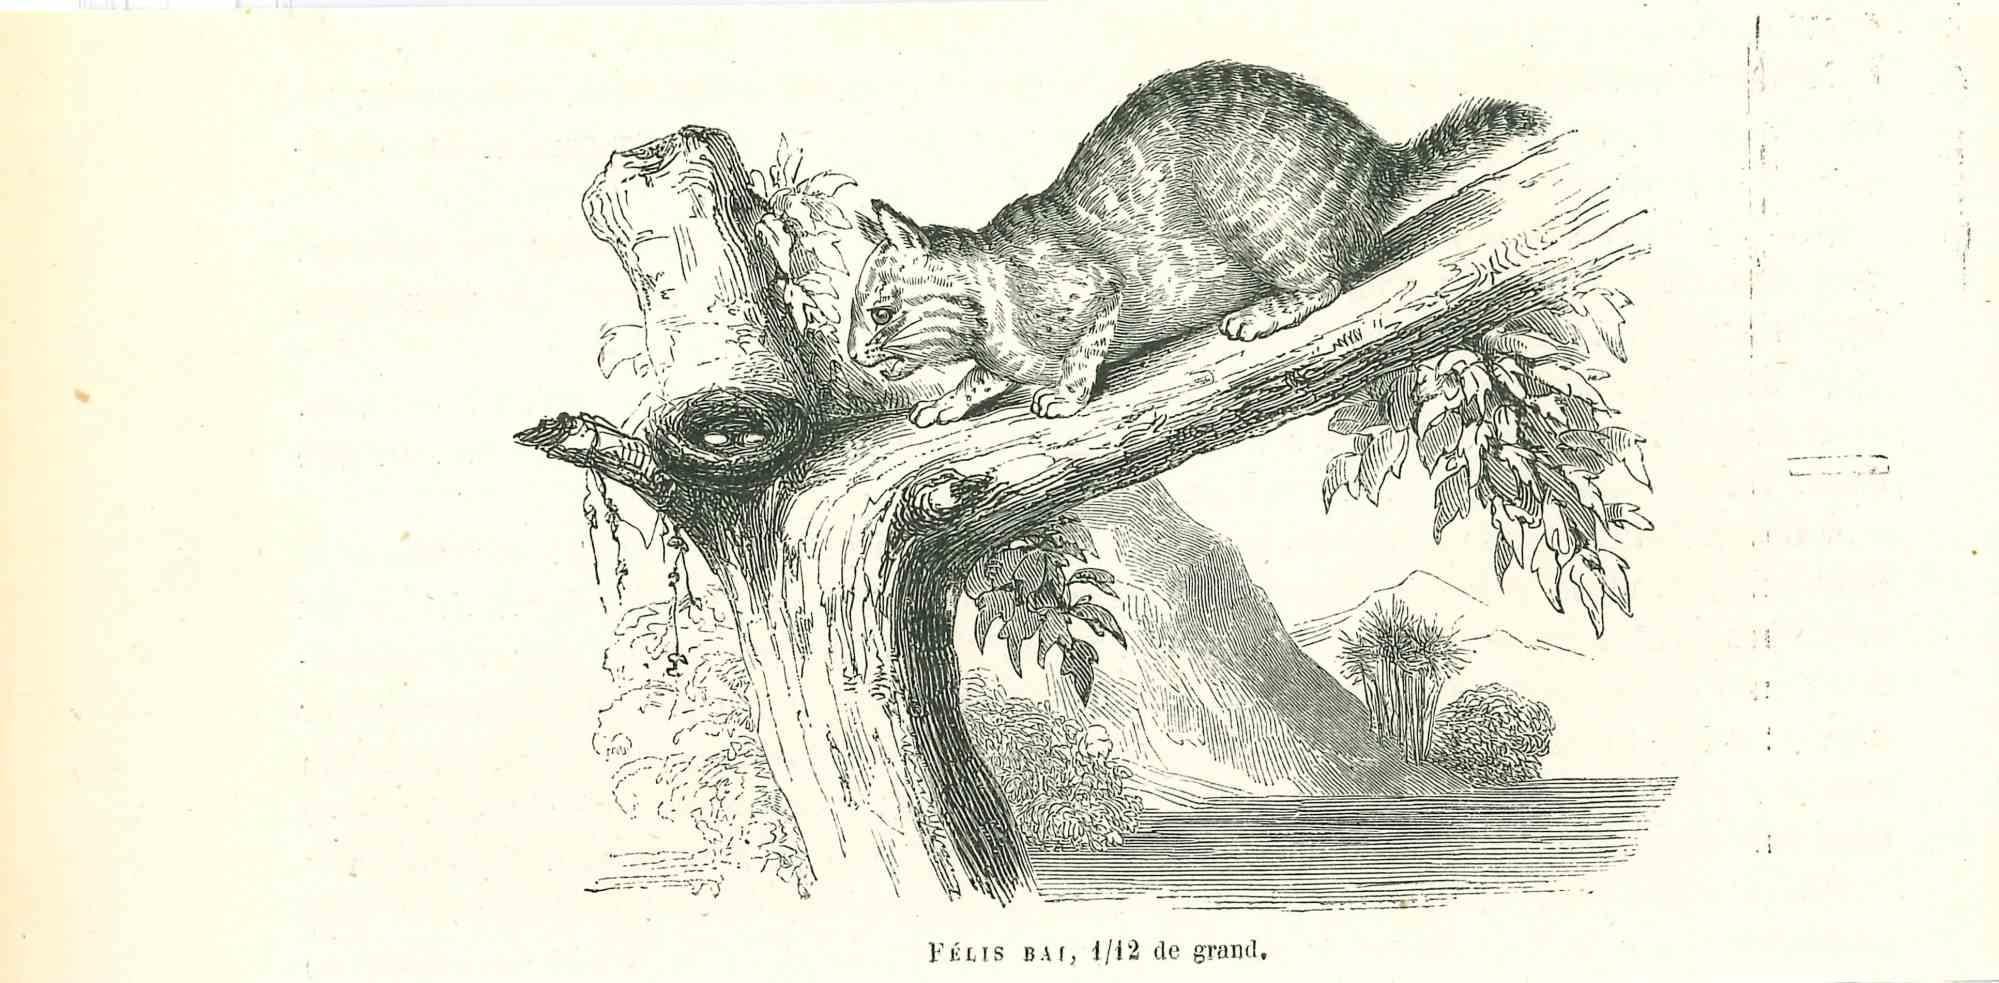 Die Katze ist eine Originallithografie auf elfenbeinfarbenem Papier, die von Paul Gervais (1816-1879) geschaffen wurde. Das Kunstwerk stammt aus der Serie "Les Trois Règnes de la Nature" und wurde 1854 veröffentlicht.

Gute Bedingungen.

Auf der